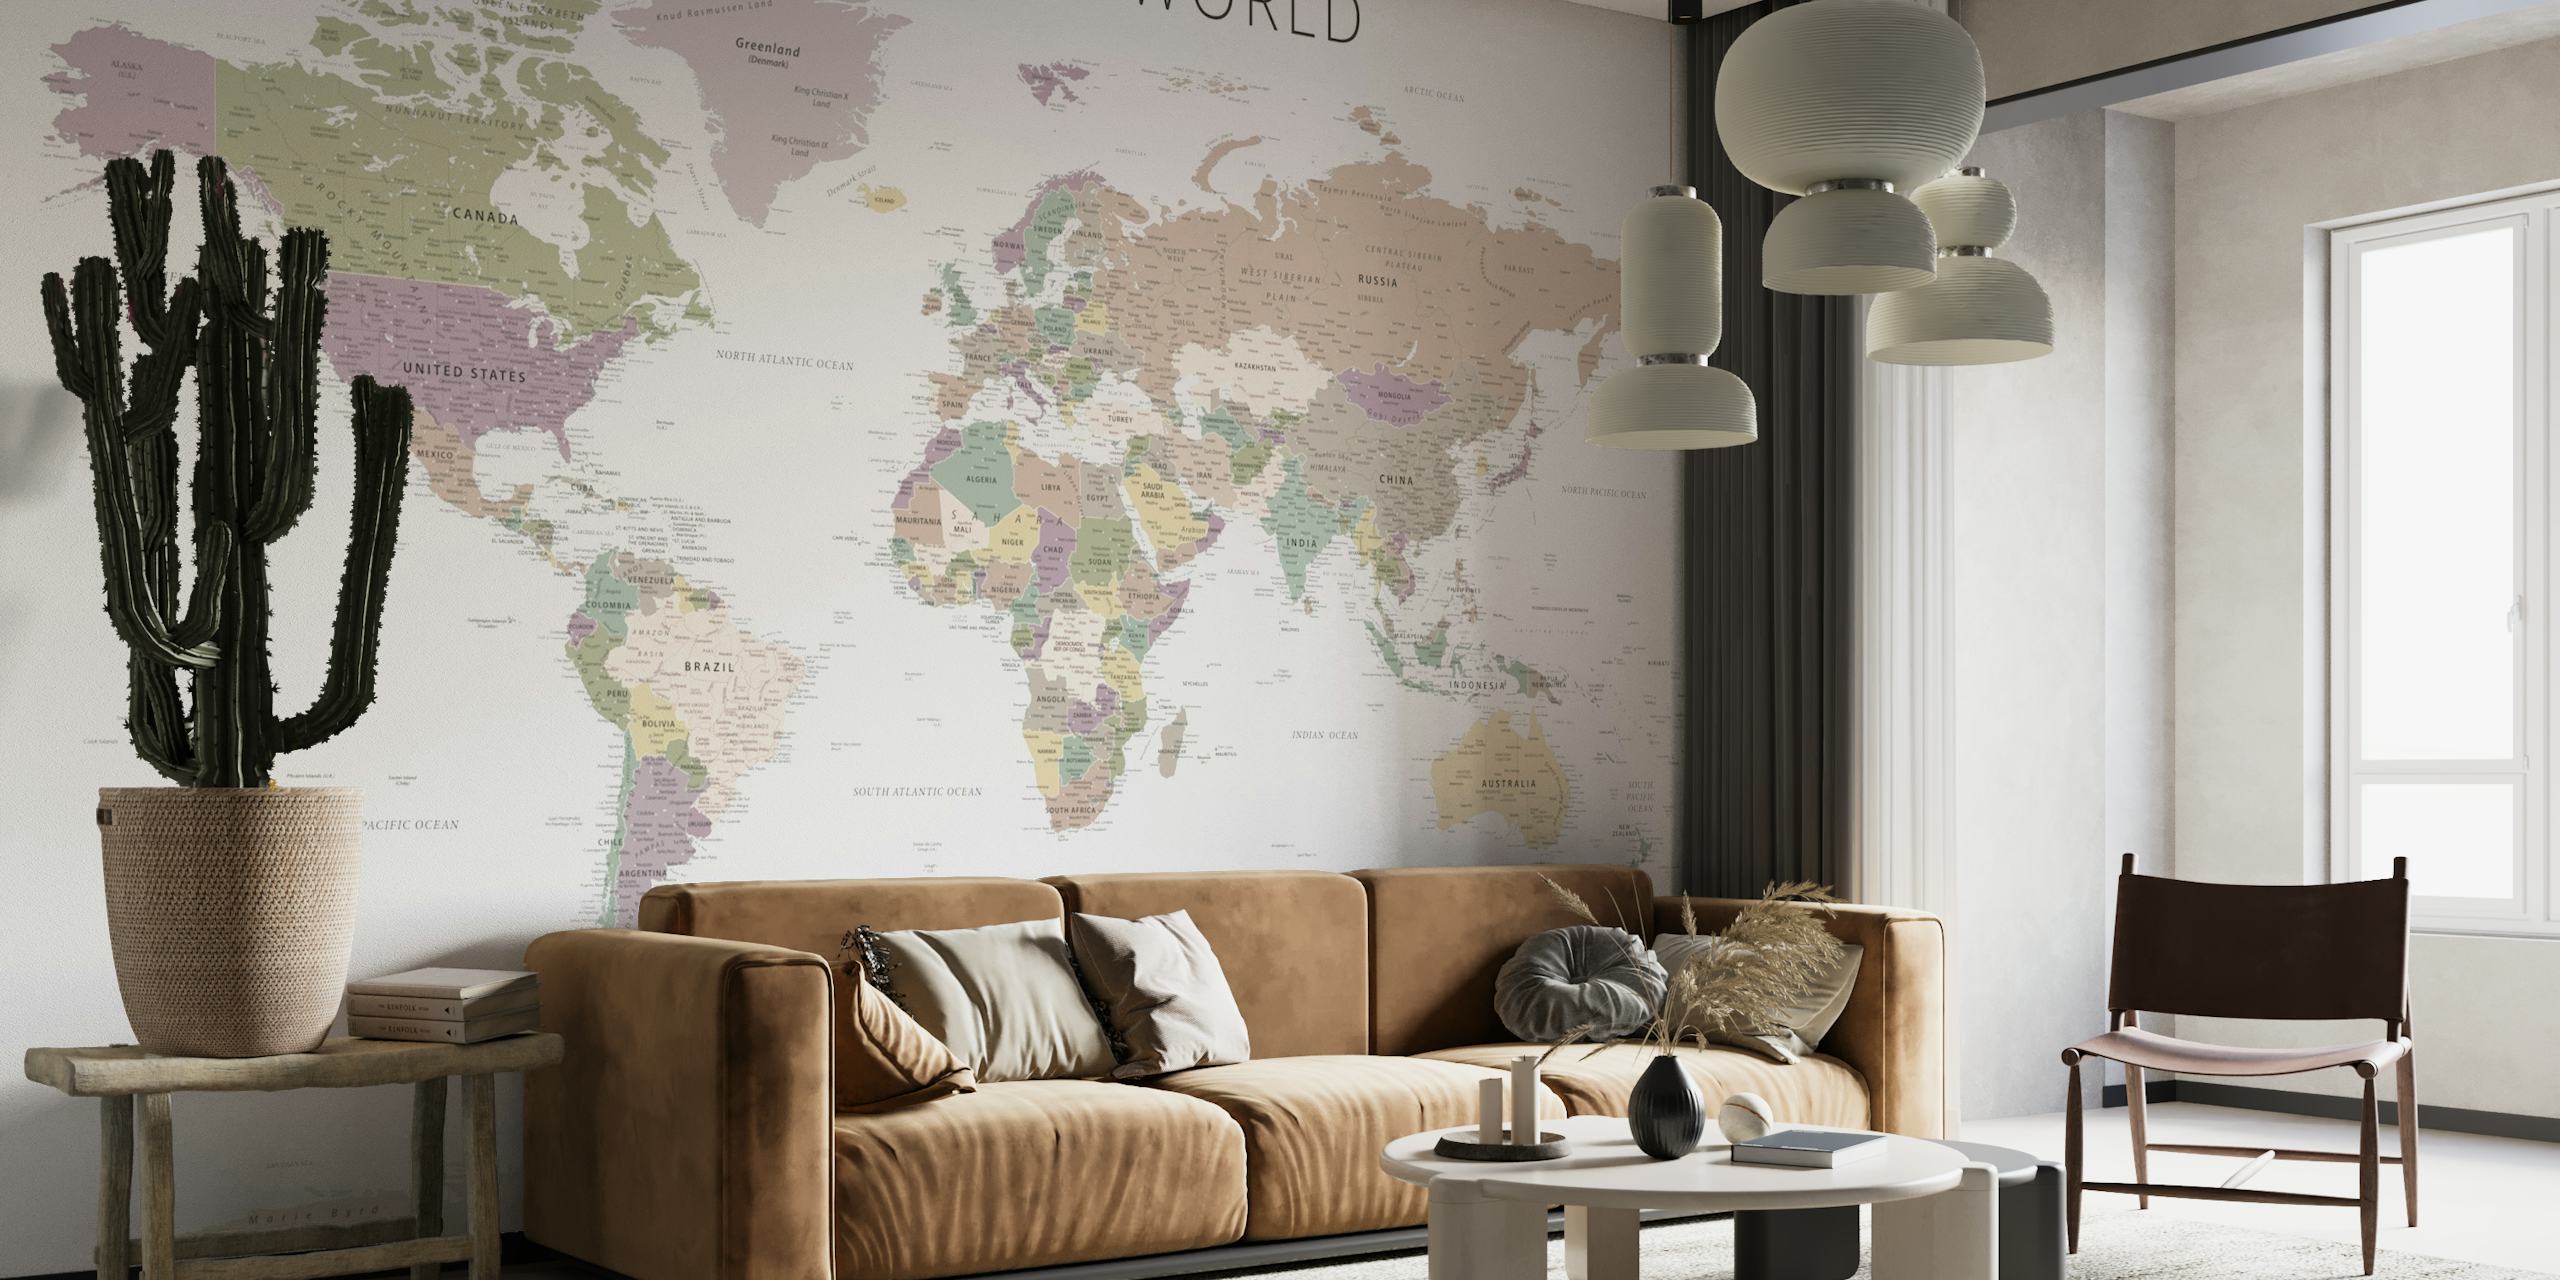 Fototapeta z mapą świata w stonowanych, neutralnych odcieniach ze szczegółowymi krajami i granicami